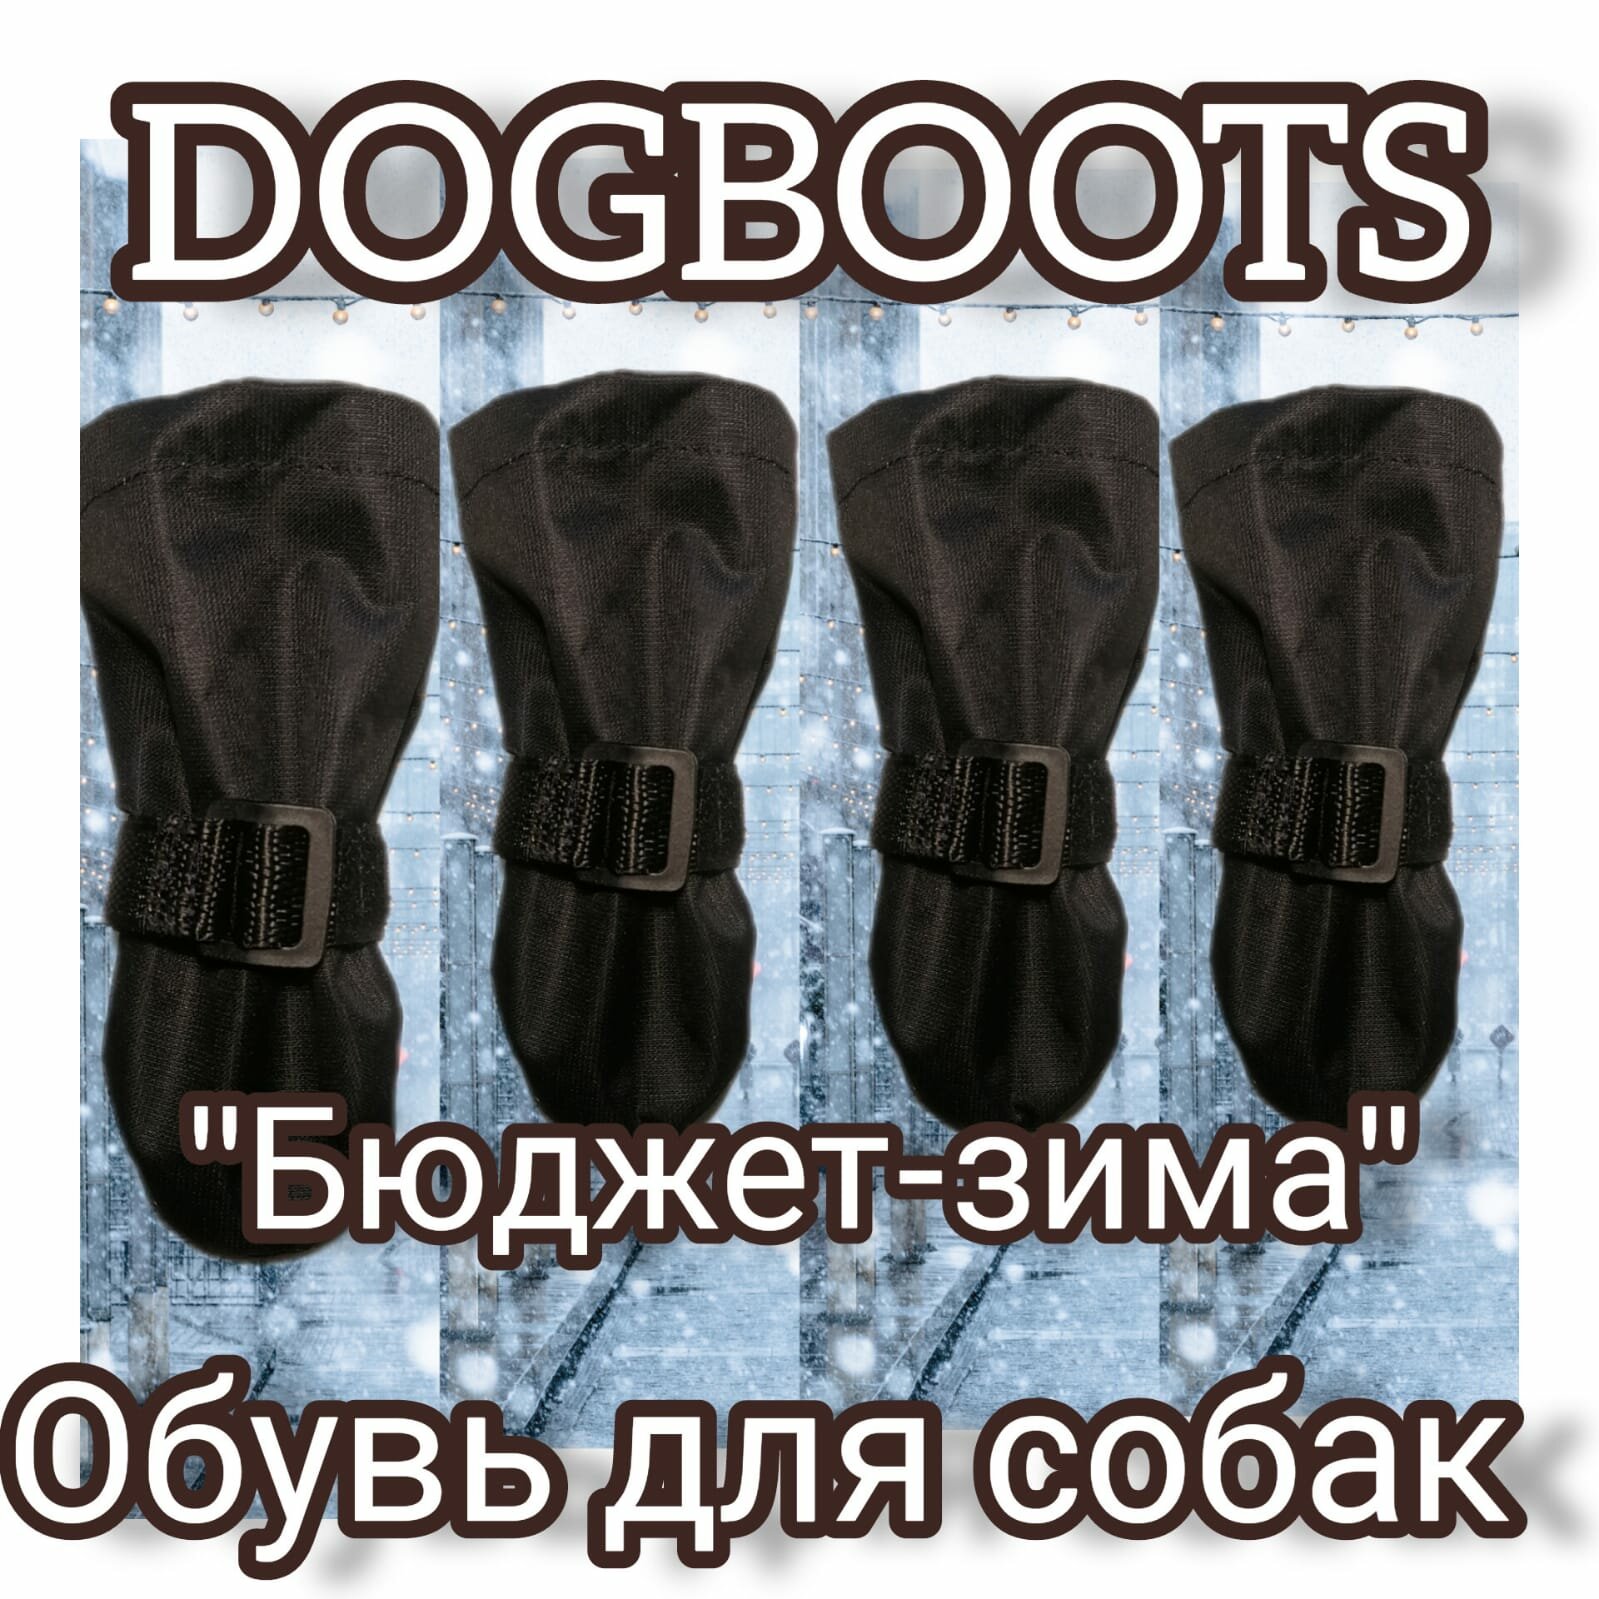 "Зимние ботинки для собак" - бюджетная модель от бренда Dogboots